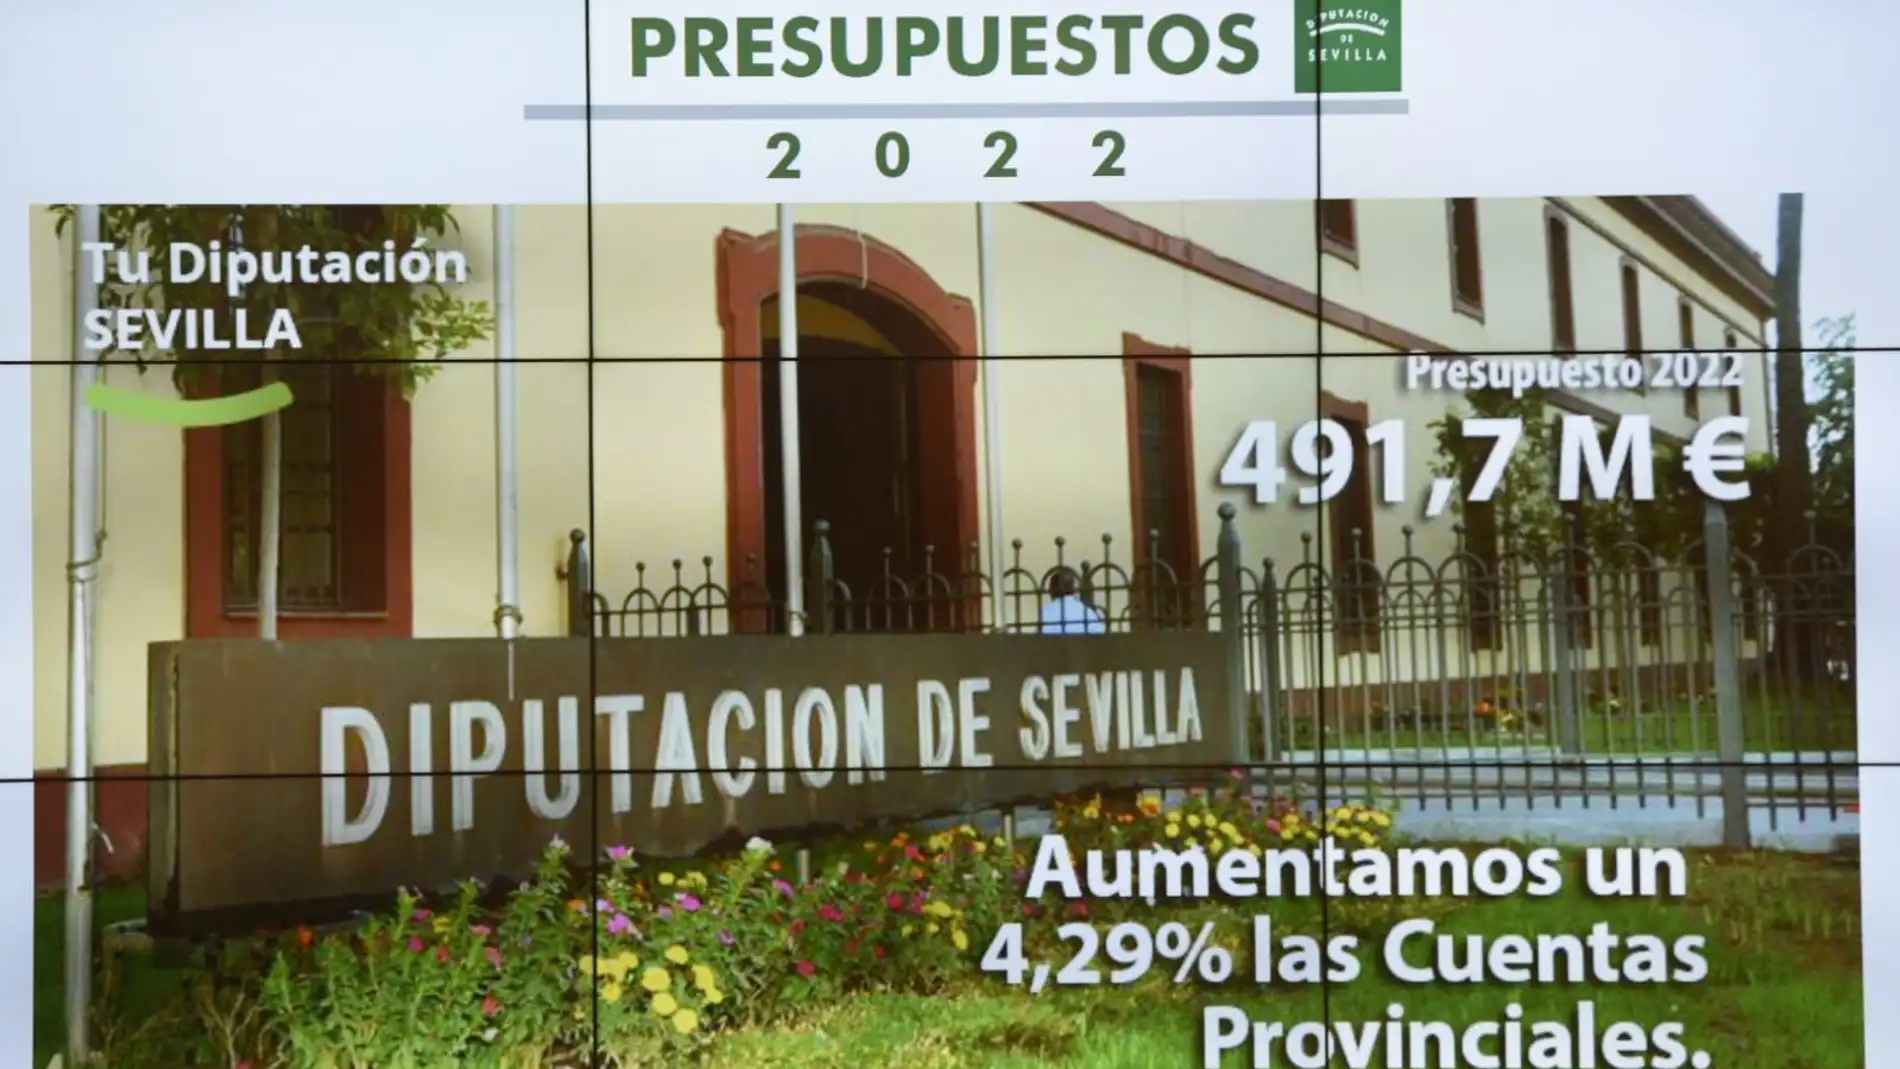 El presupuesto de Diputación de Sevilla asciende a 491,7 millones de euros, lo que supone un incremento del 4%